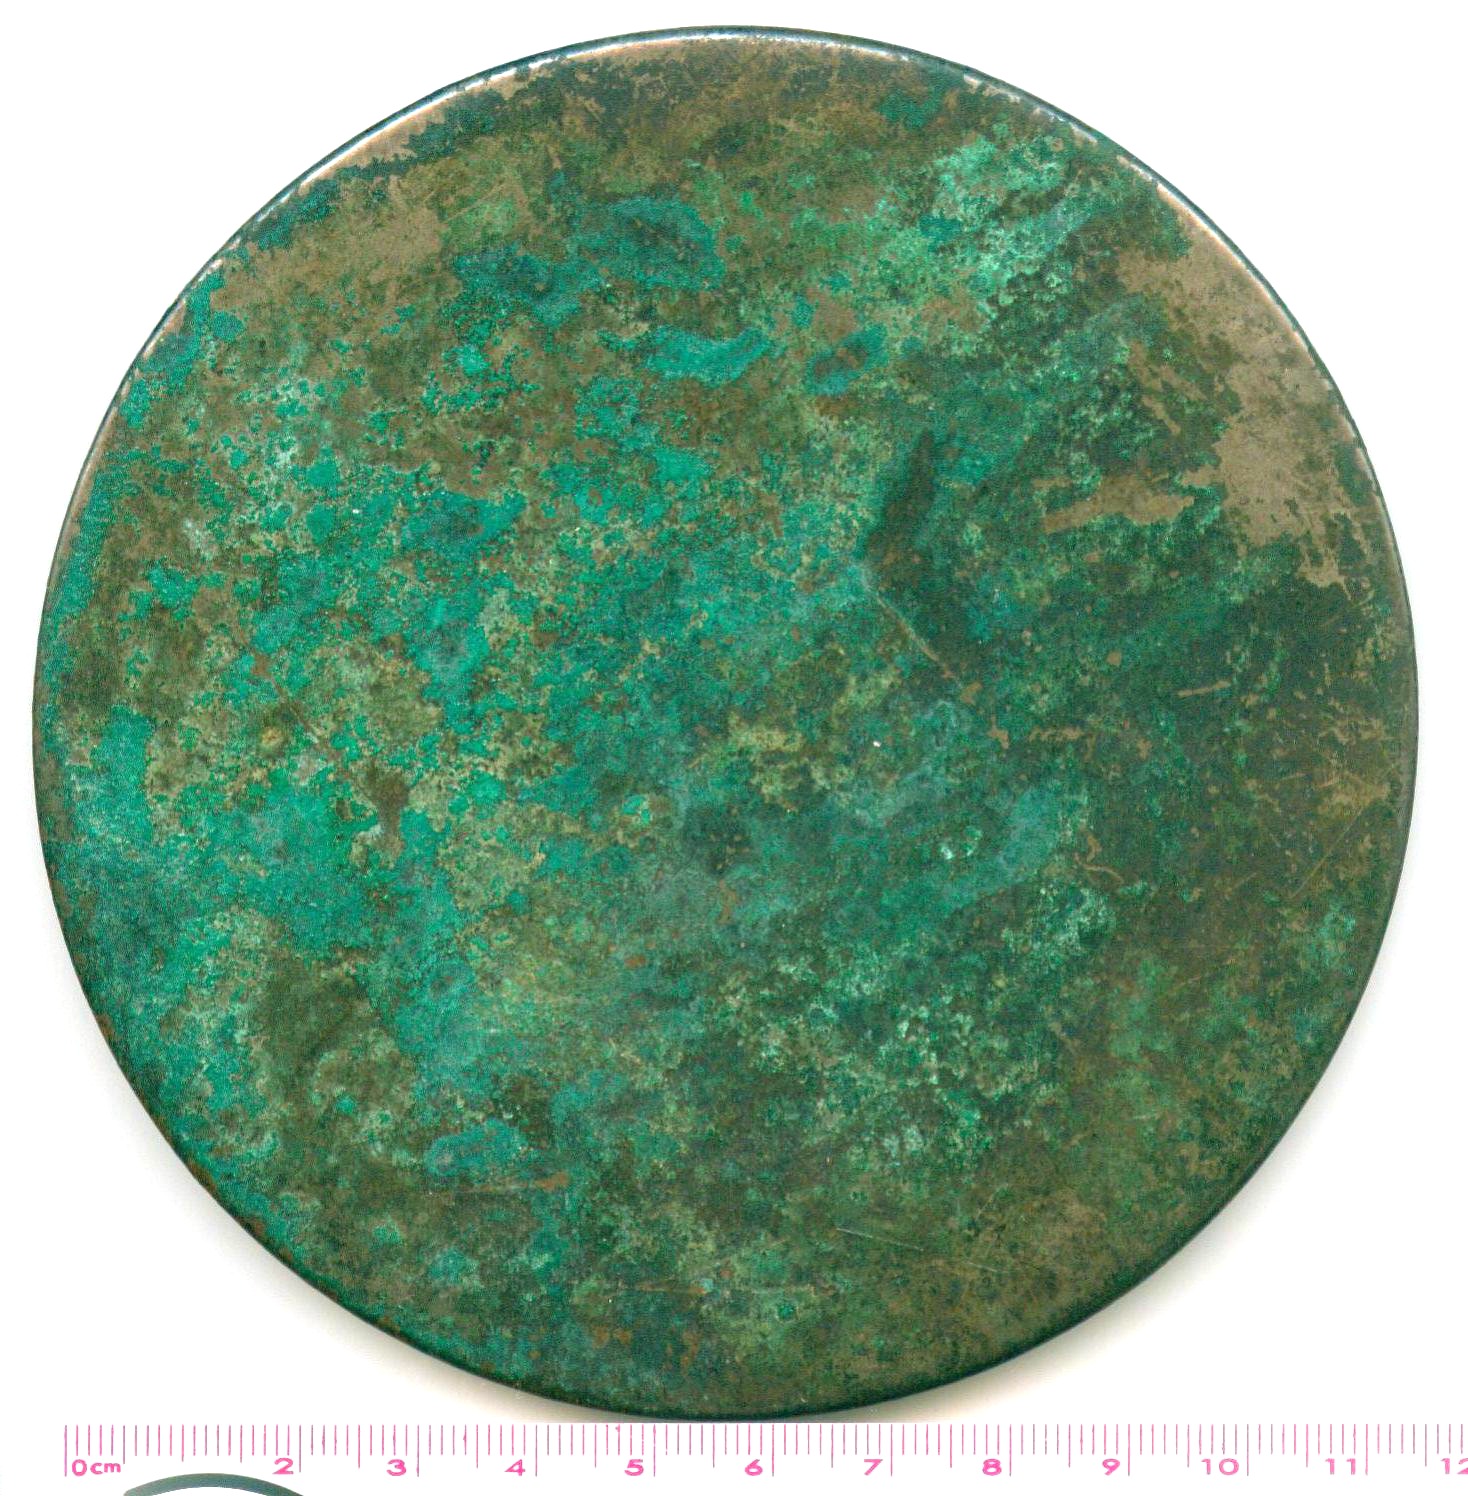 A4026, Ancient Bronze Mirror with 4 Characters--"Xu Wang Hu Jing"